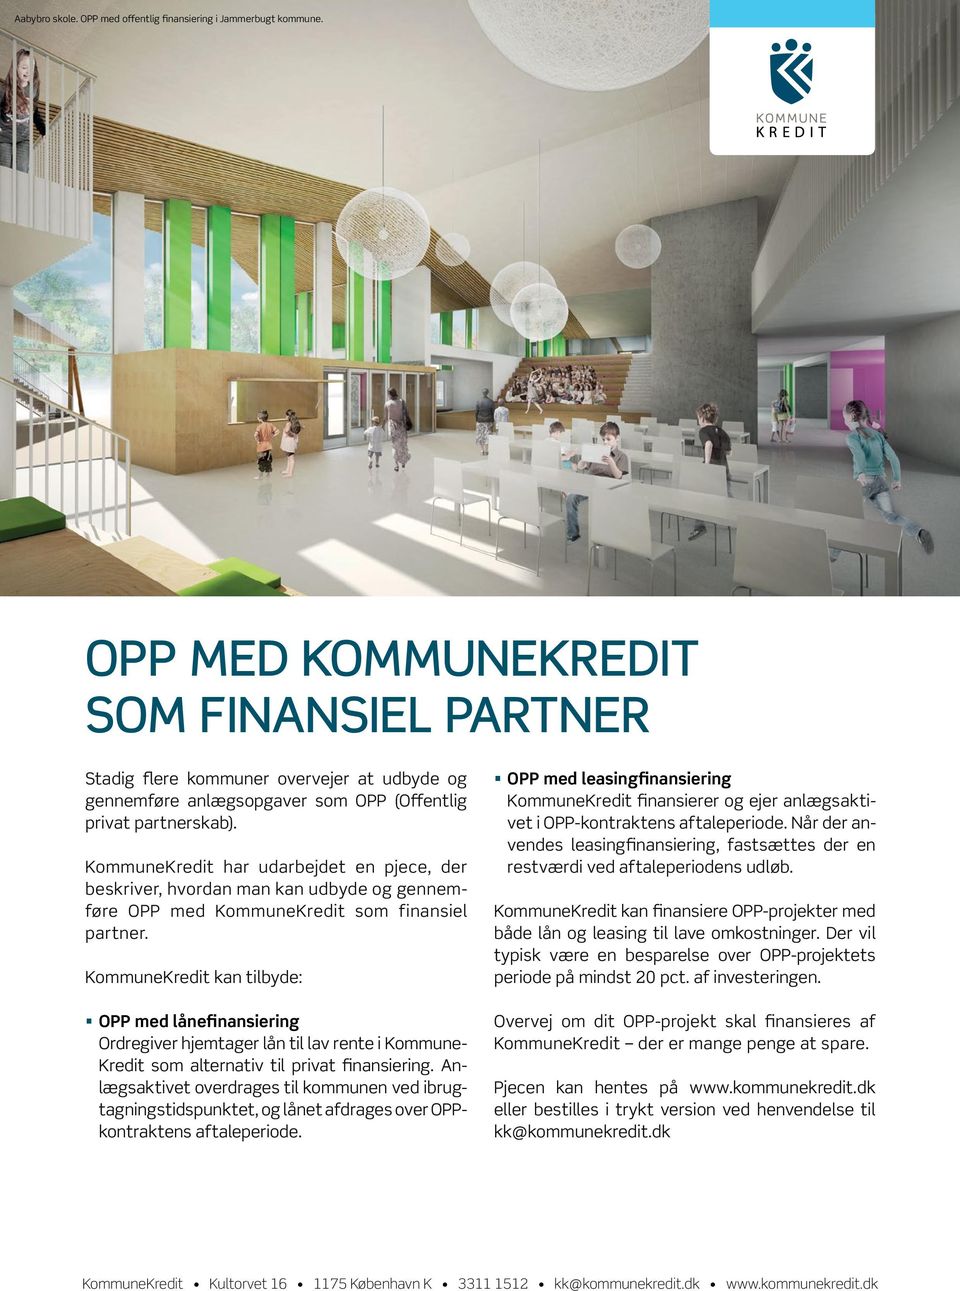 leasingfinansiering KommuneKredit finansierer og ejer anlægsaktivet privat partnerskab). i OPP kontraktens aftaleperiode.